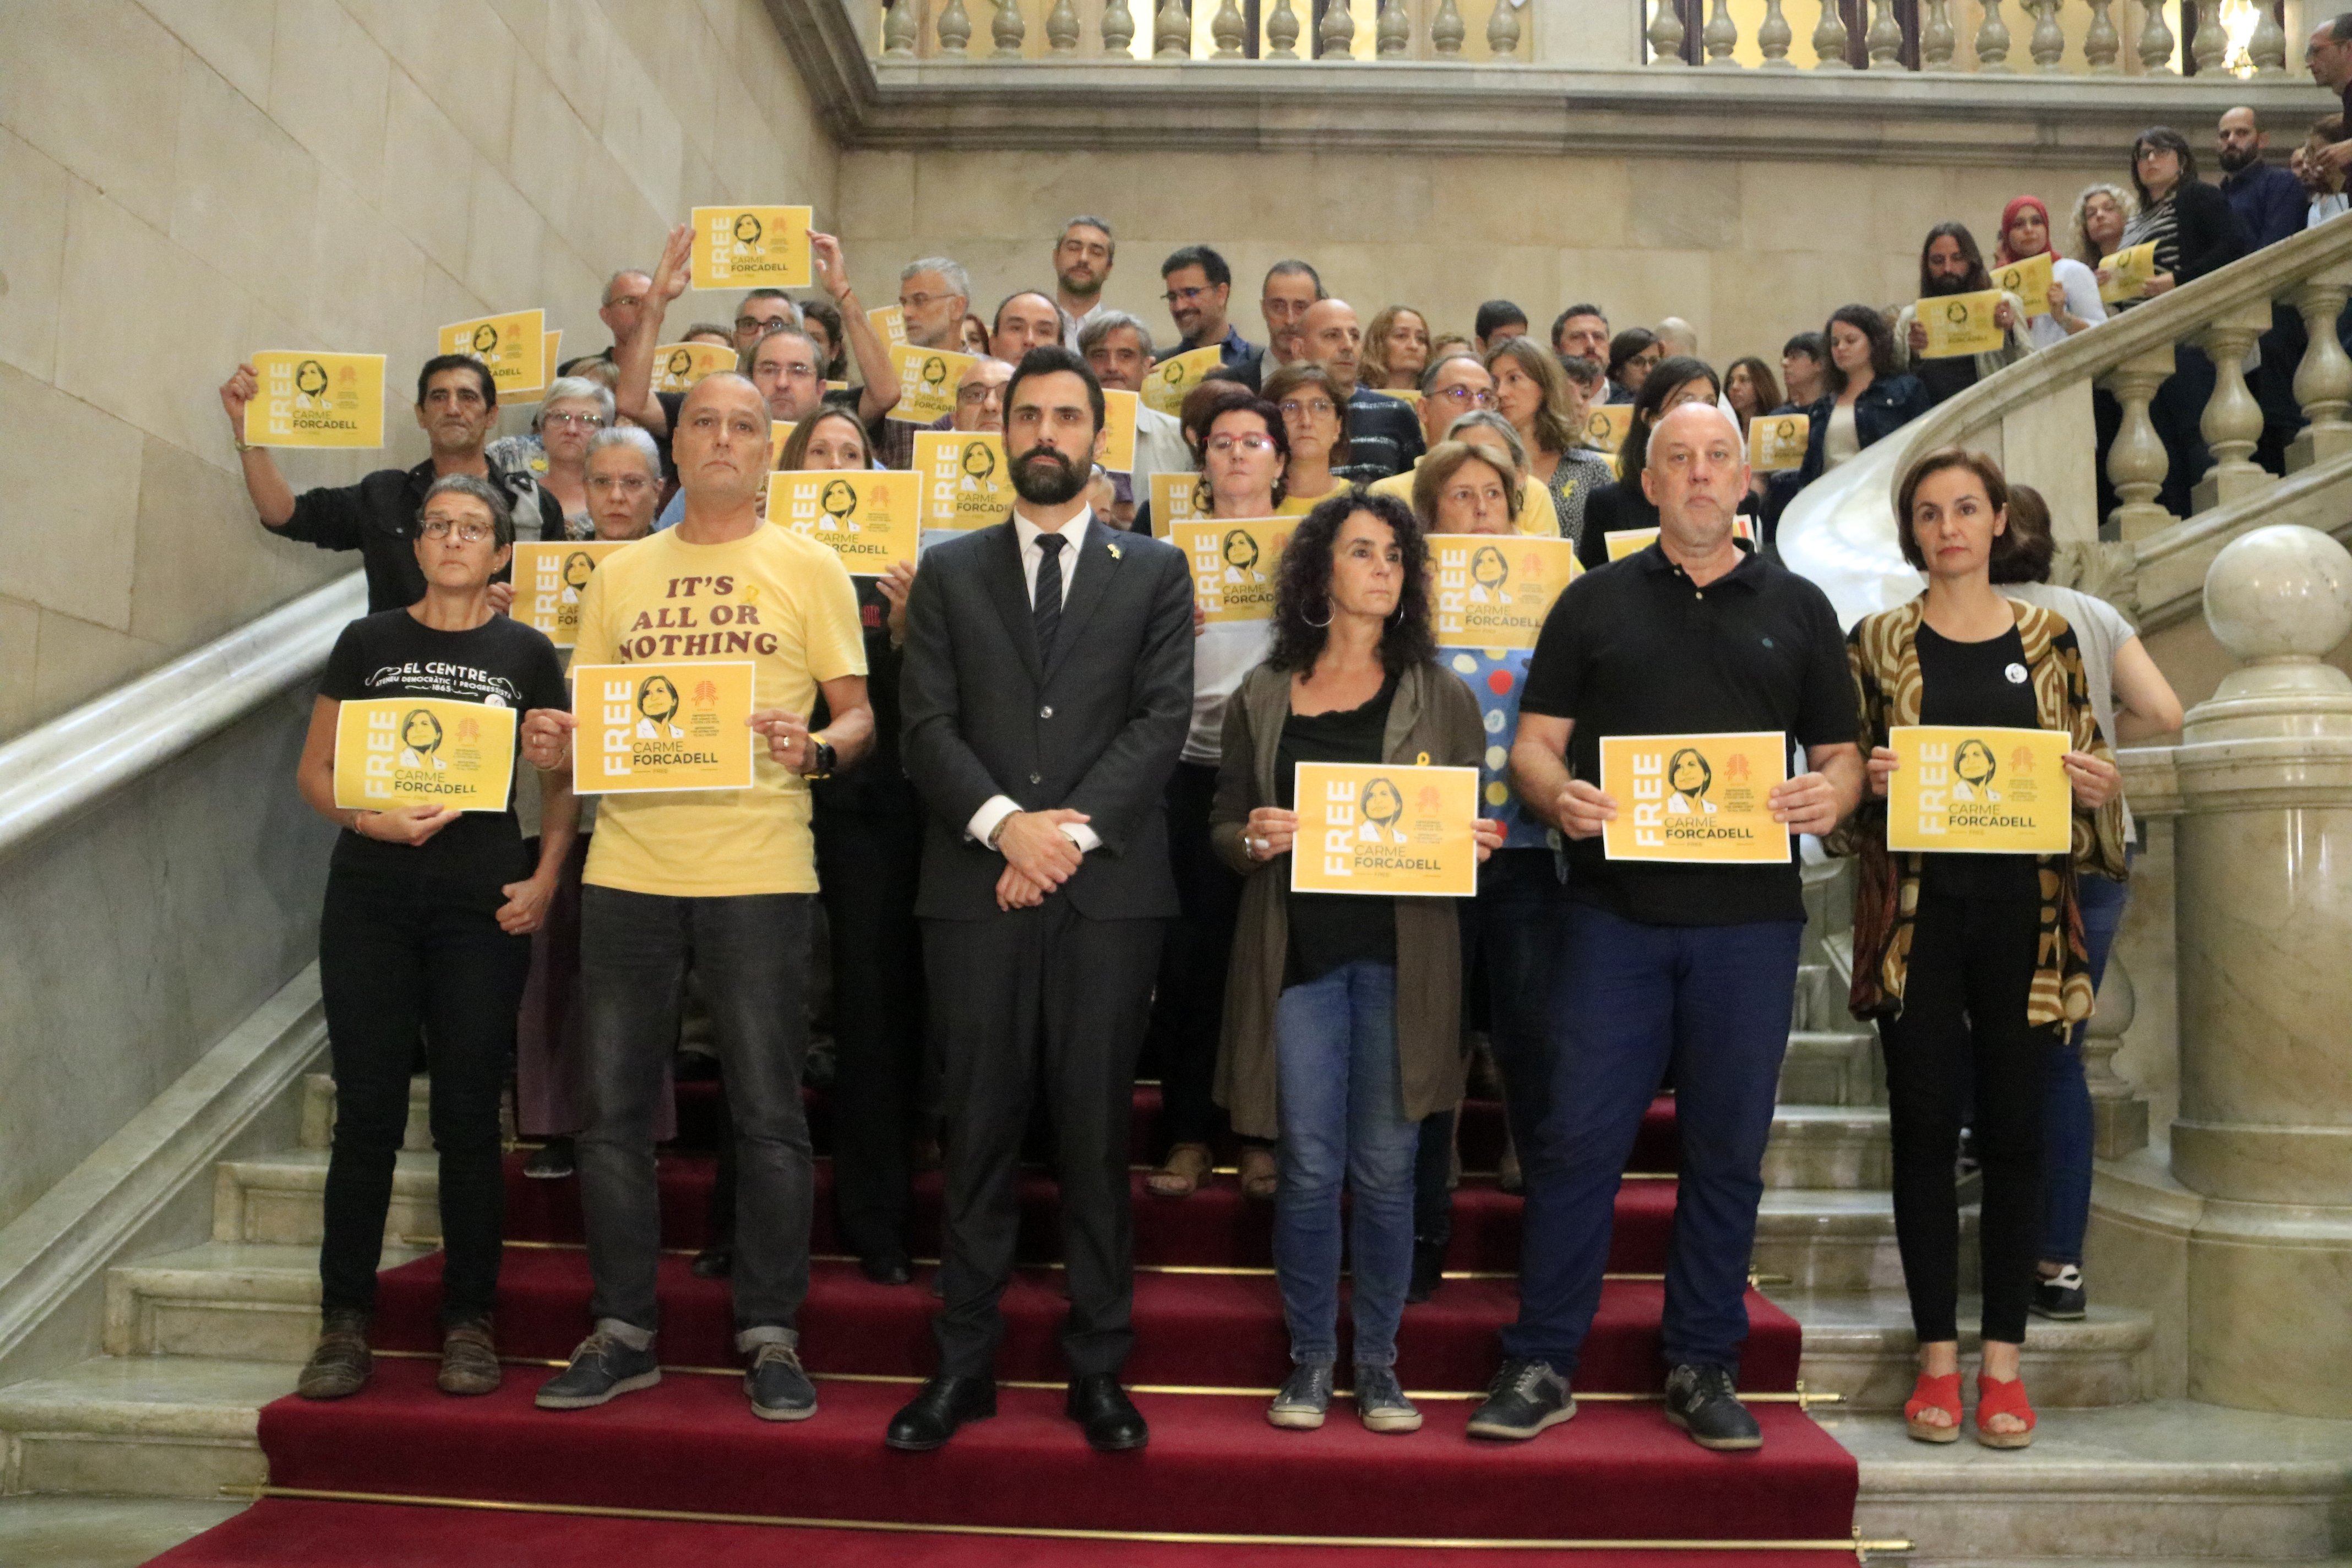 Independentistas y comunes rechazan la sentencia por "injusta" y "antidemocrática"